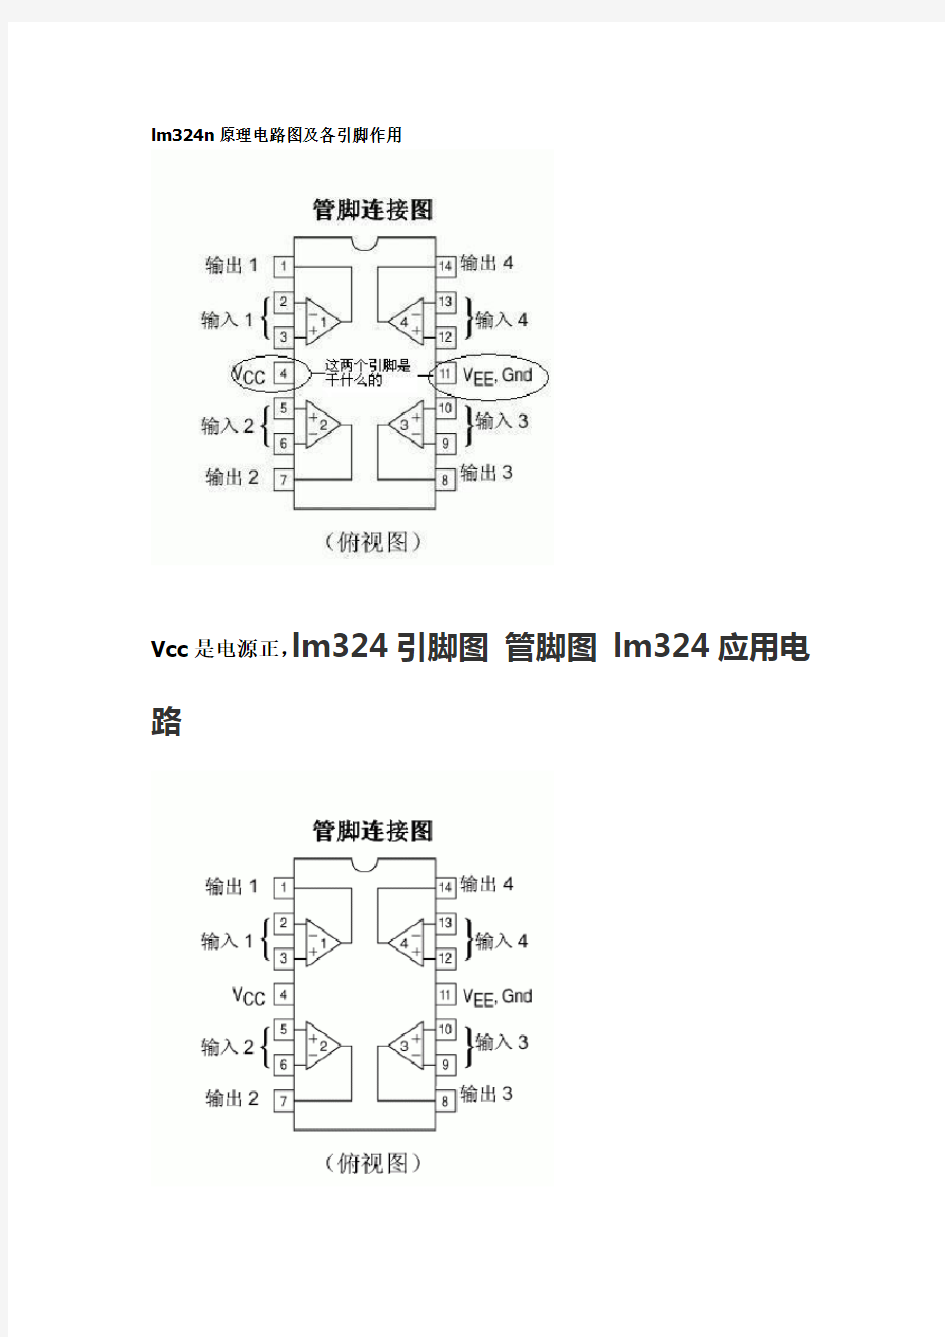 lm324n原理电路图及各引脚作用